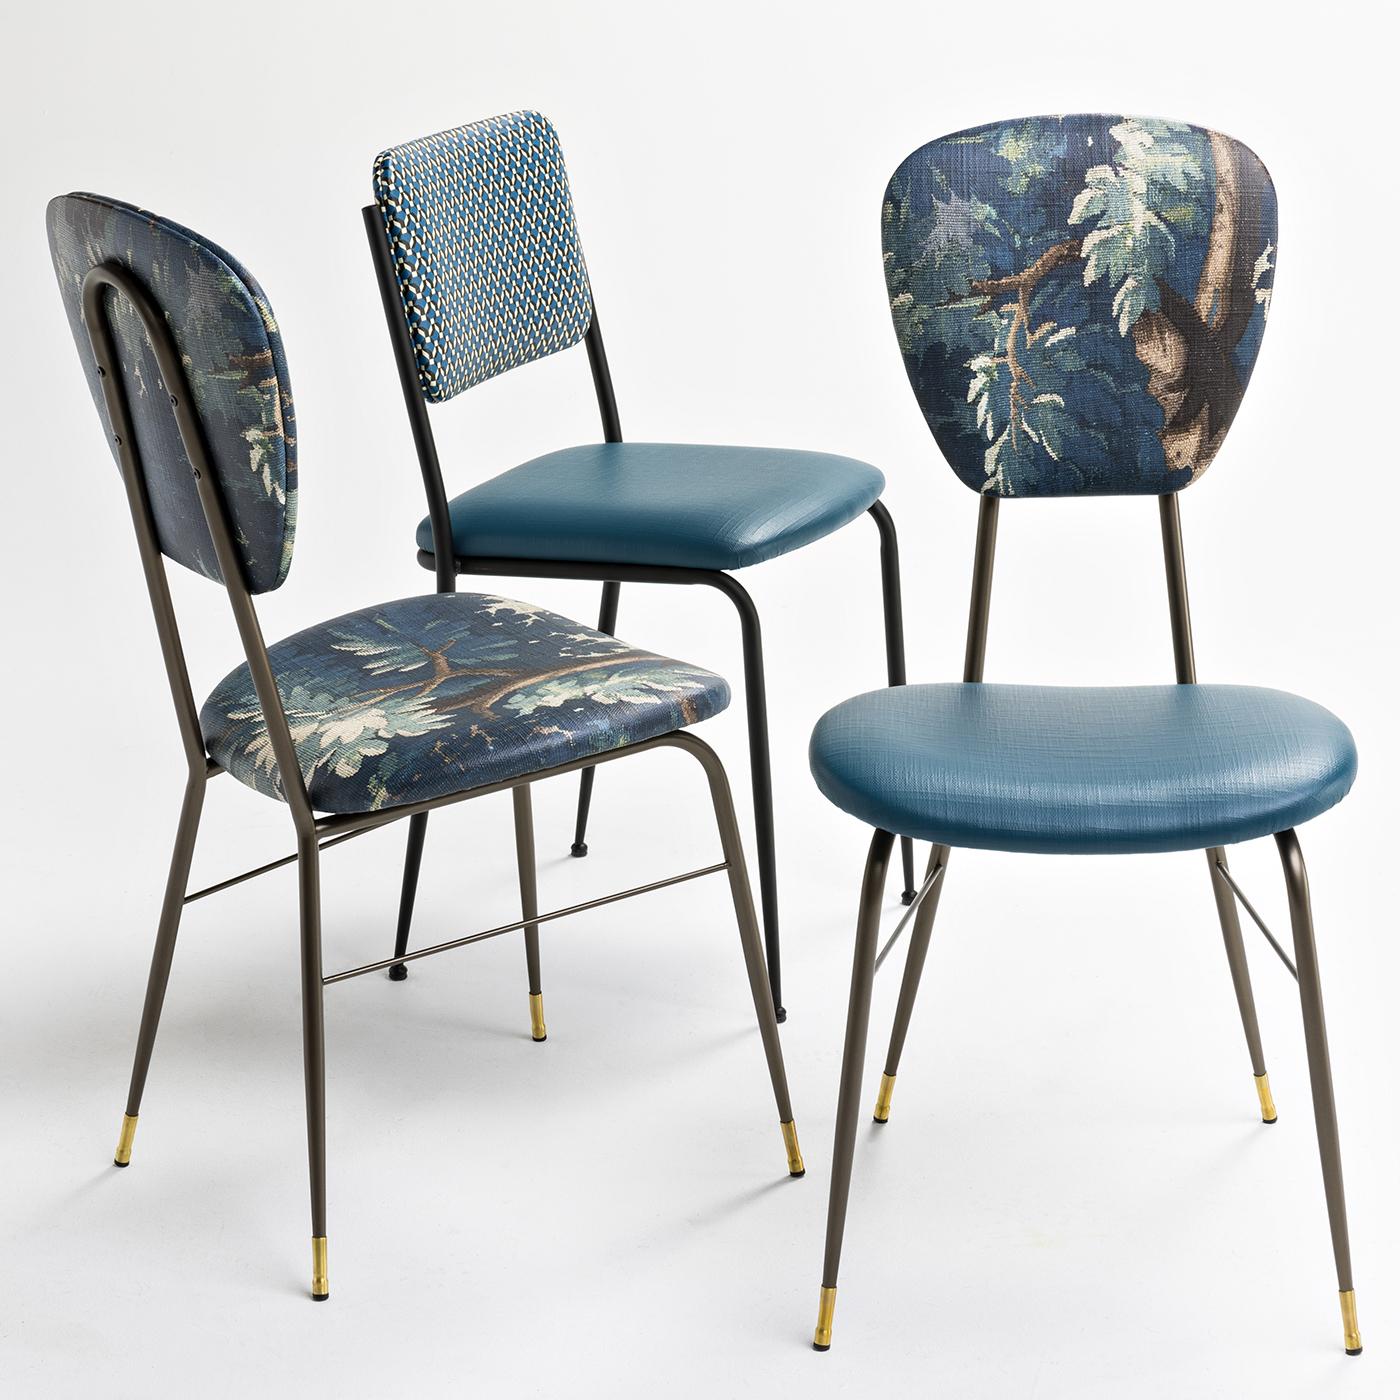 Ein schöner Stuhl für einen Esstisch, vielleicht mit einem Hauch von Vintage. Der Metallrahmen und die Beine sind in gebürsteter Bronze ausgeführt, während dekorative Stuhlführungen aus Messing die Beine zieren. Der Sitz ist mit einem ozeanblauen,